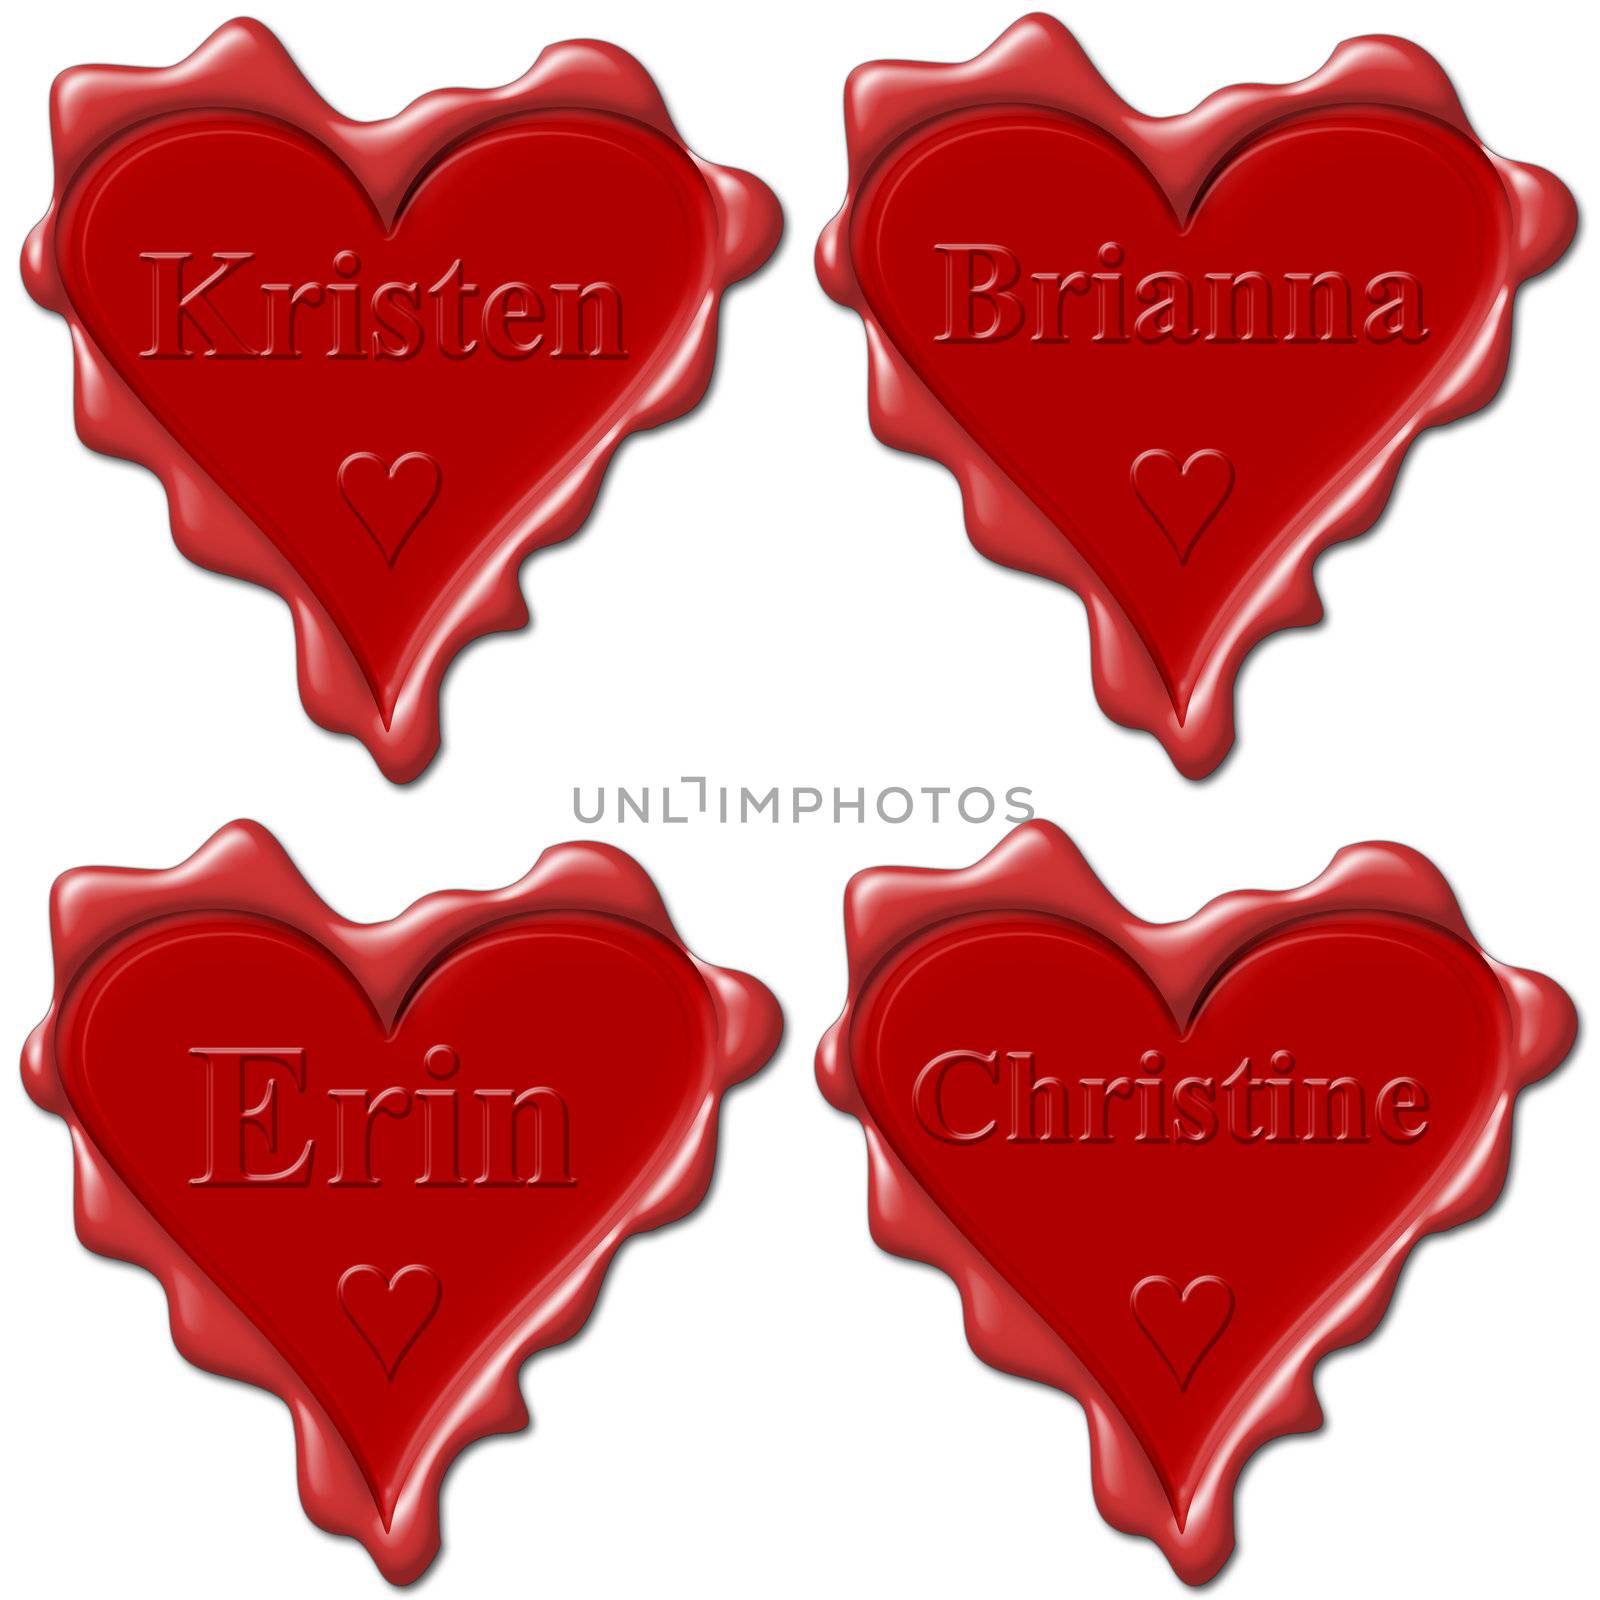 Valentine love hearts with names: Kristen, Brianna, Erin, Christine